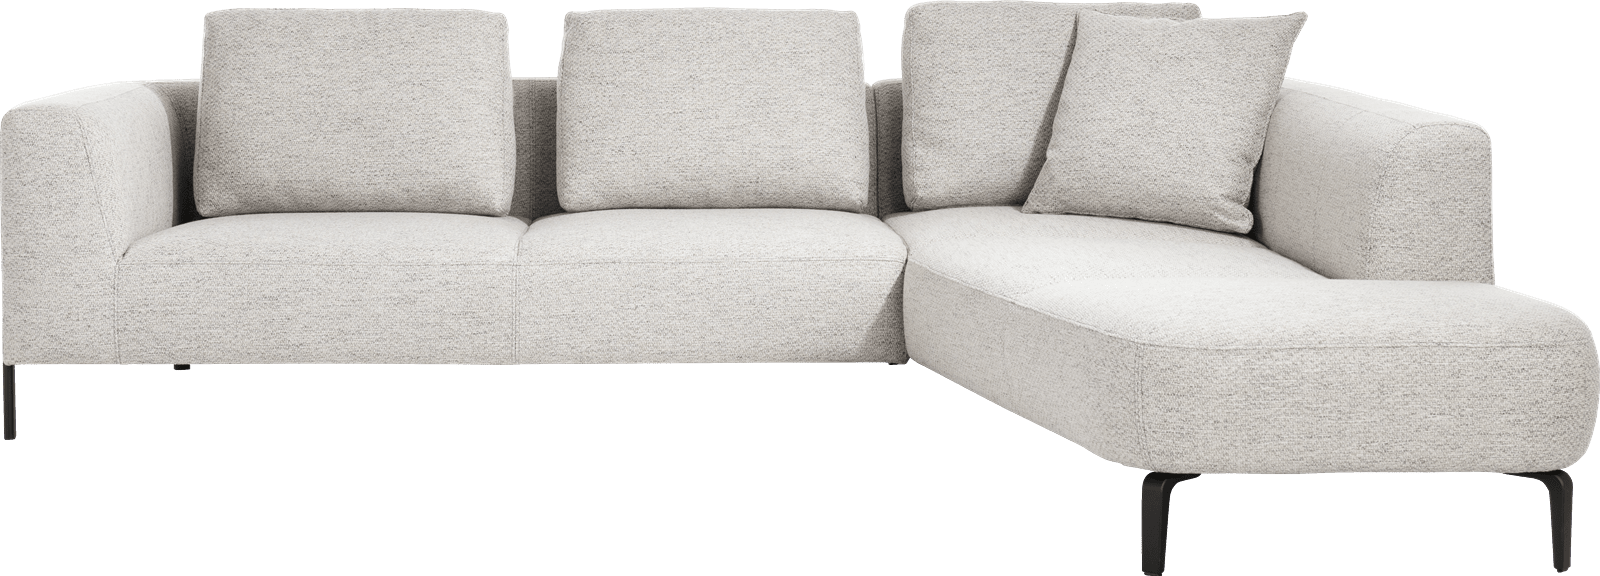 XOOON - Brampton - Sofas - 2.5-Sitzer Armlehne links